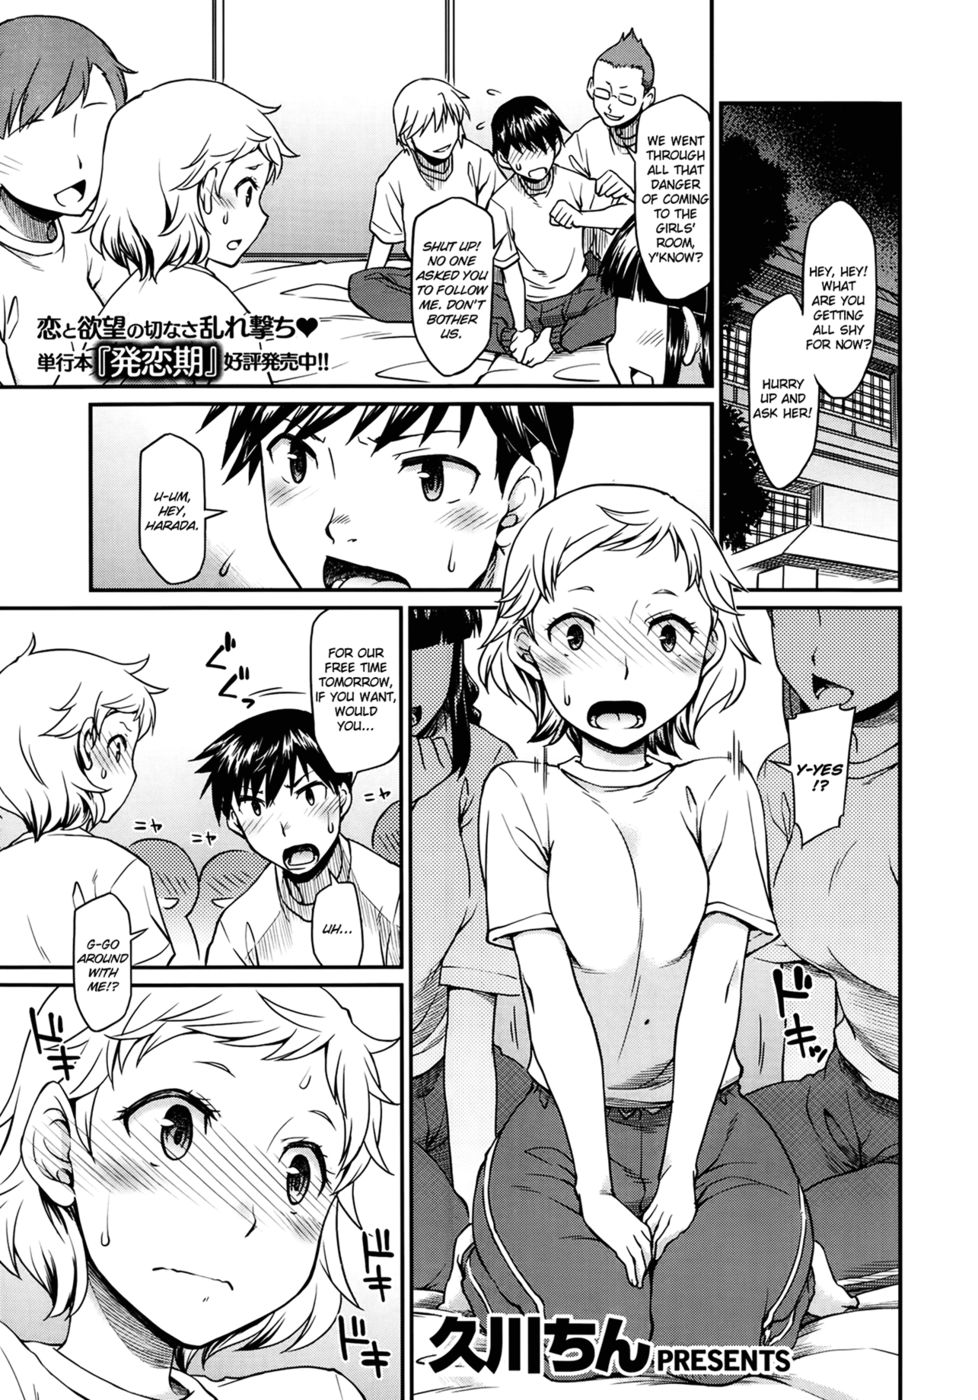 Hentai Manga Comic-Inside the Futon-Read-1